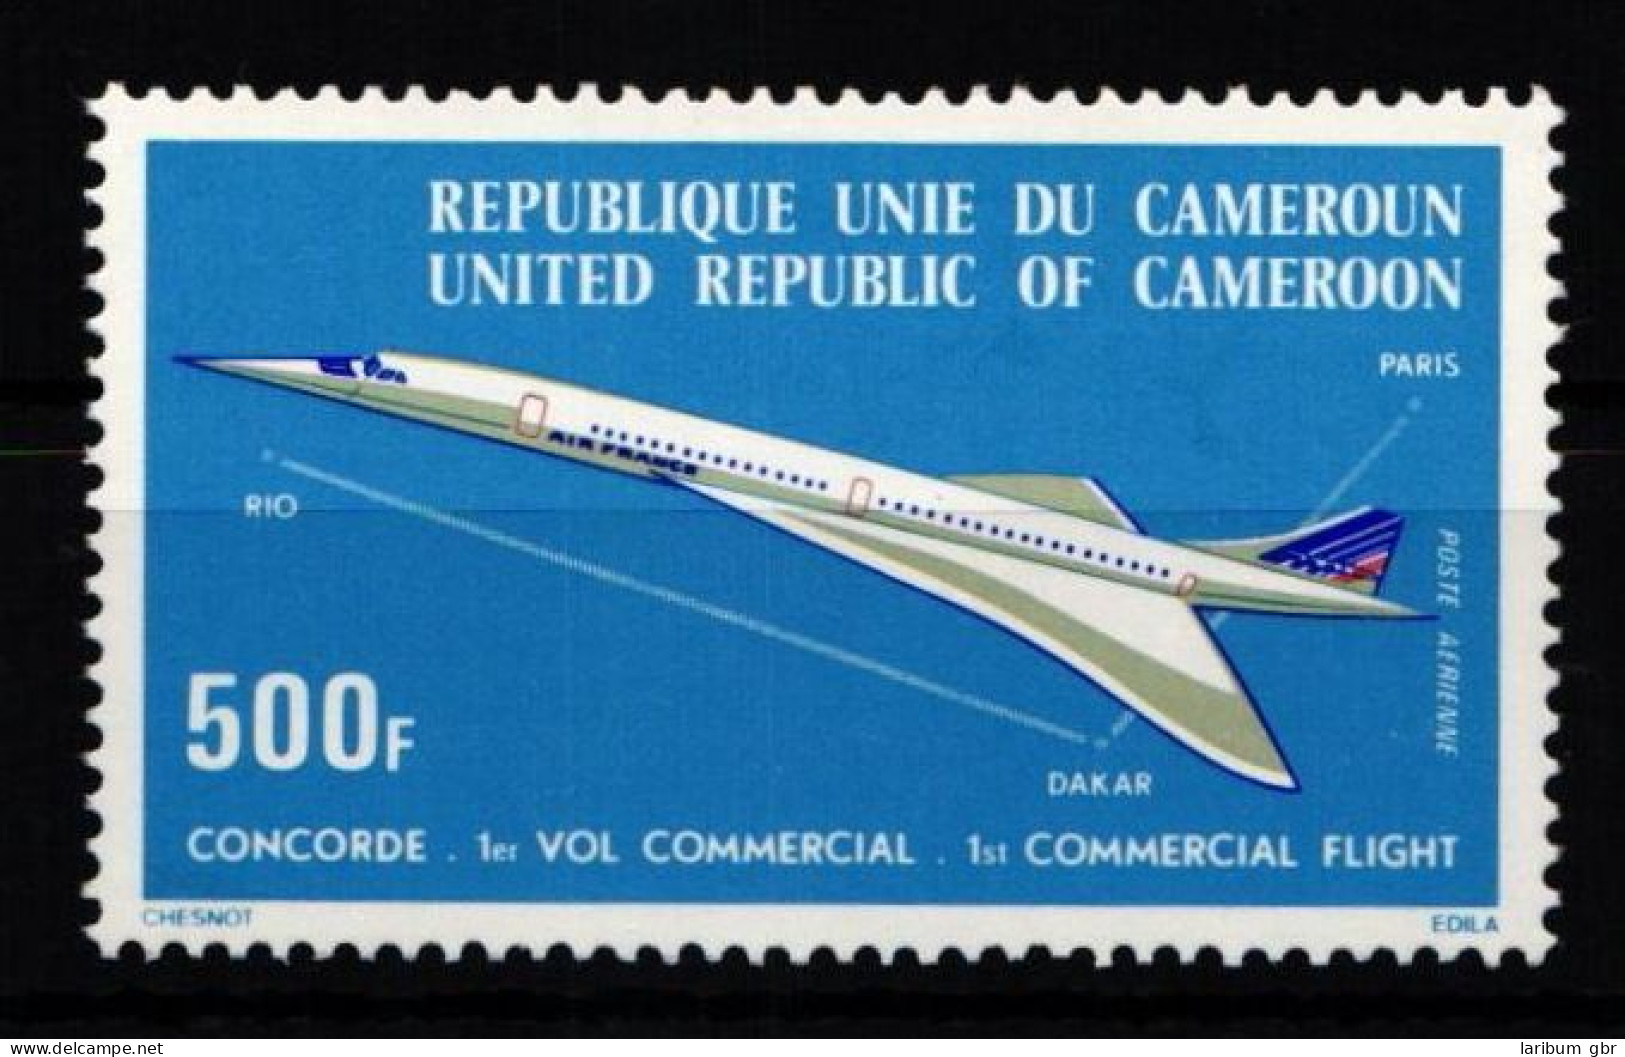 Kamerun 818 Postfrisch #JZ599 - Kameroen (1960-...)